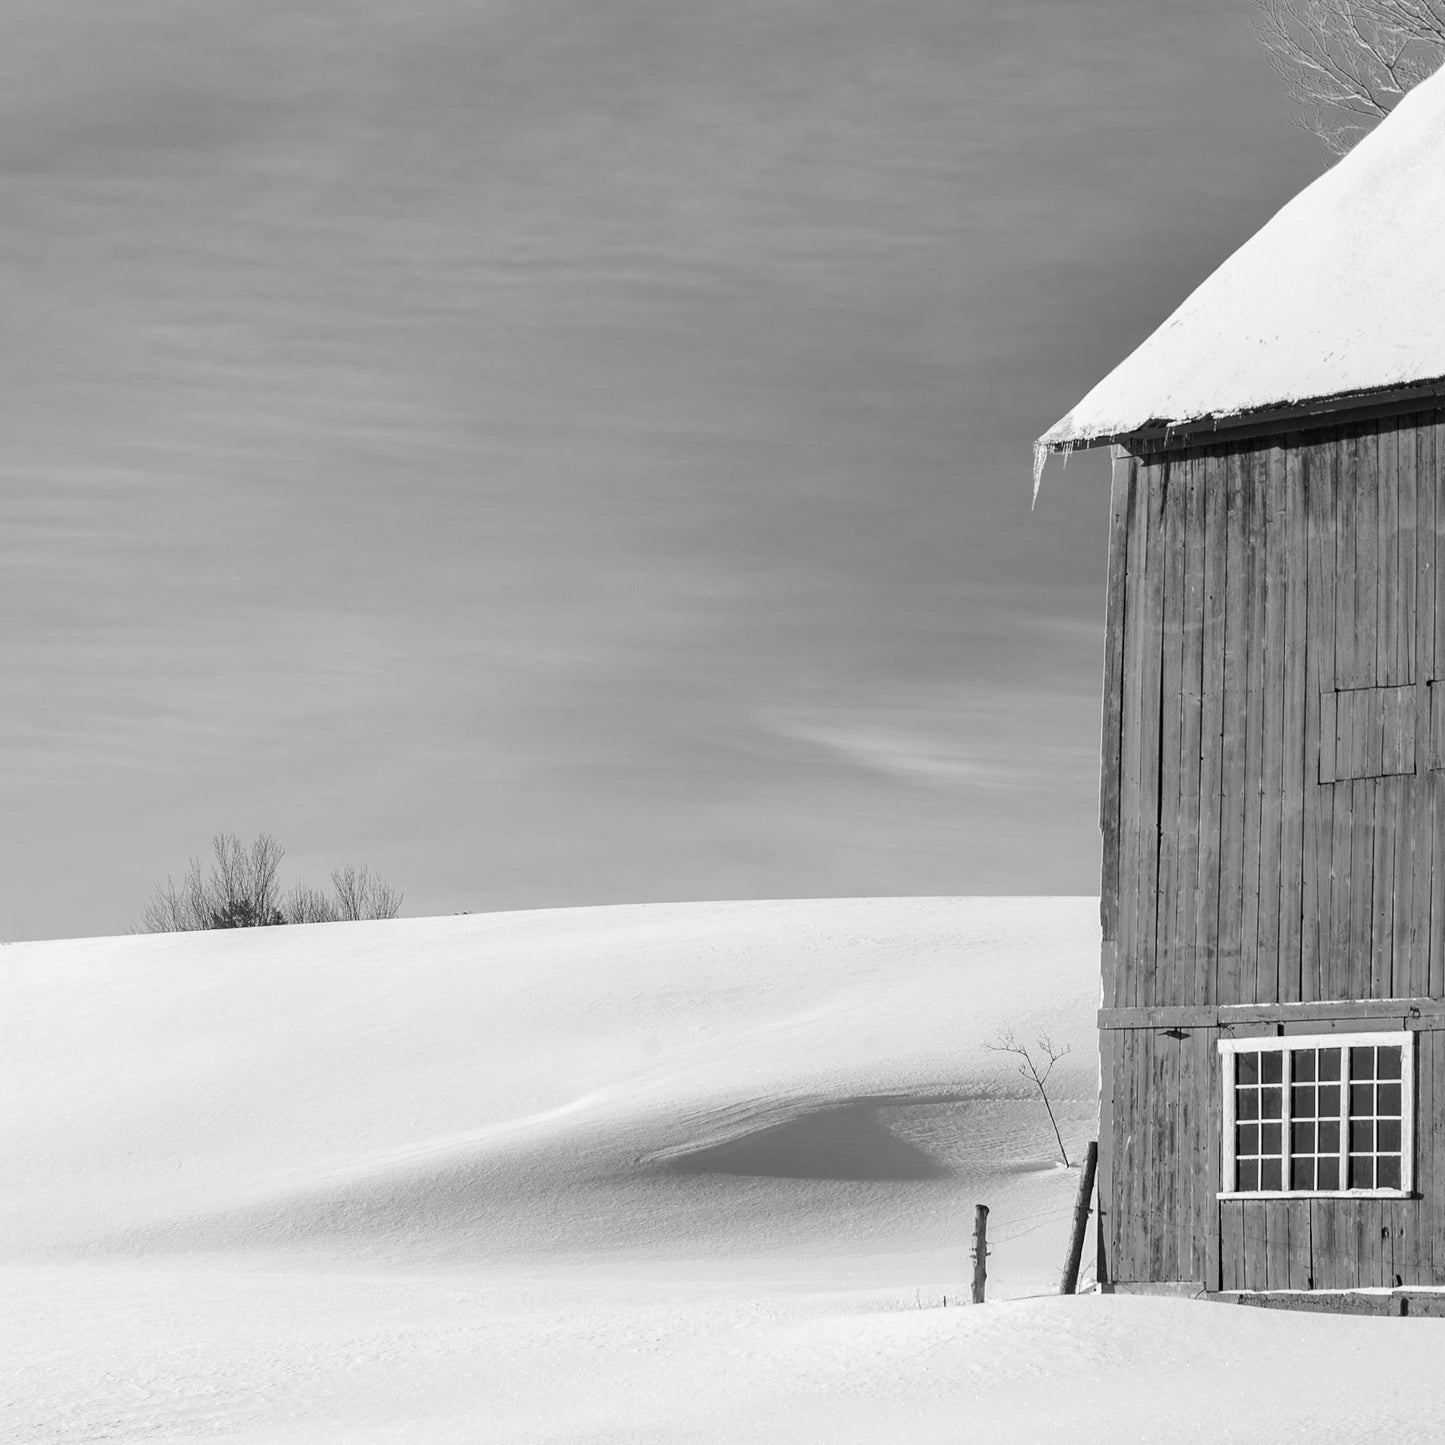 Spear Barn in Winter (Framed)